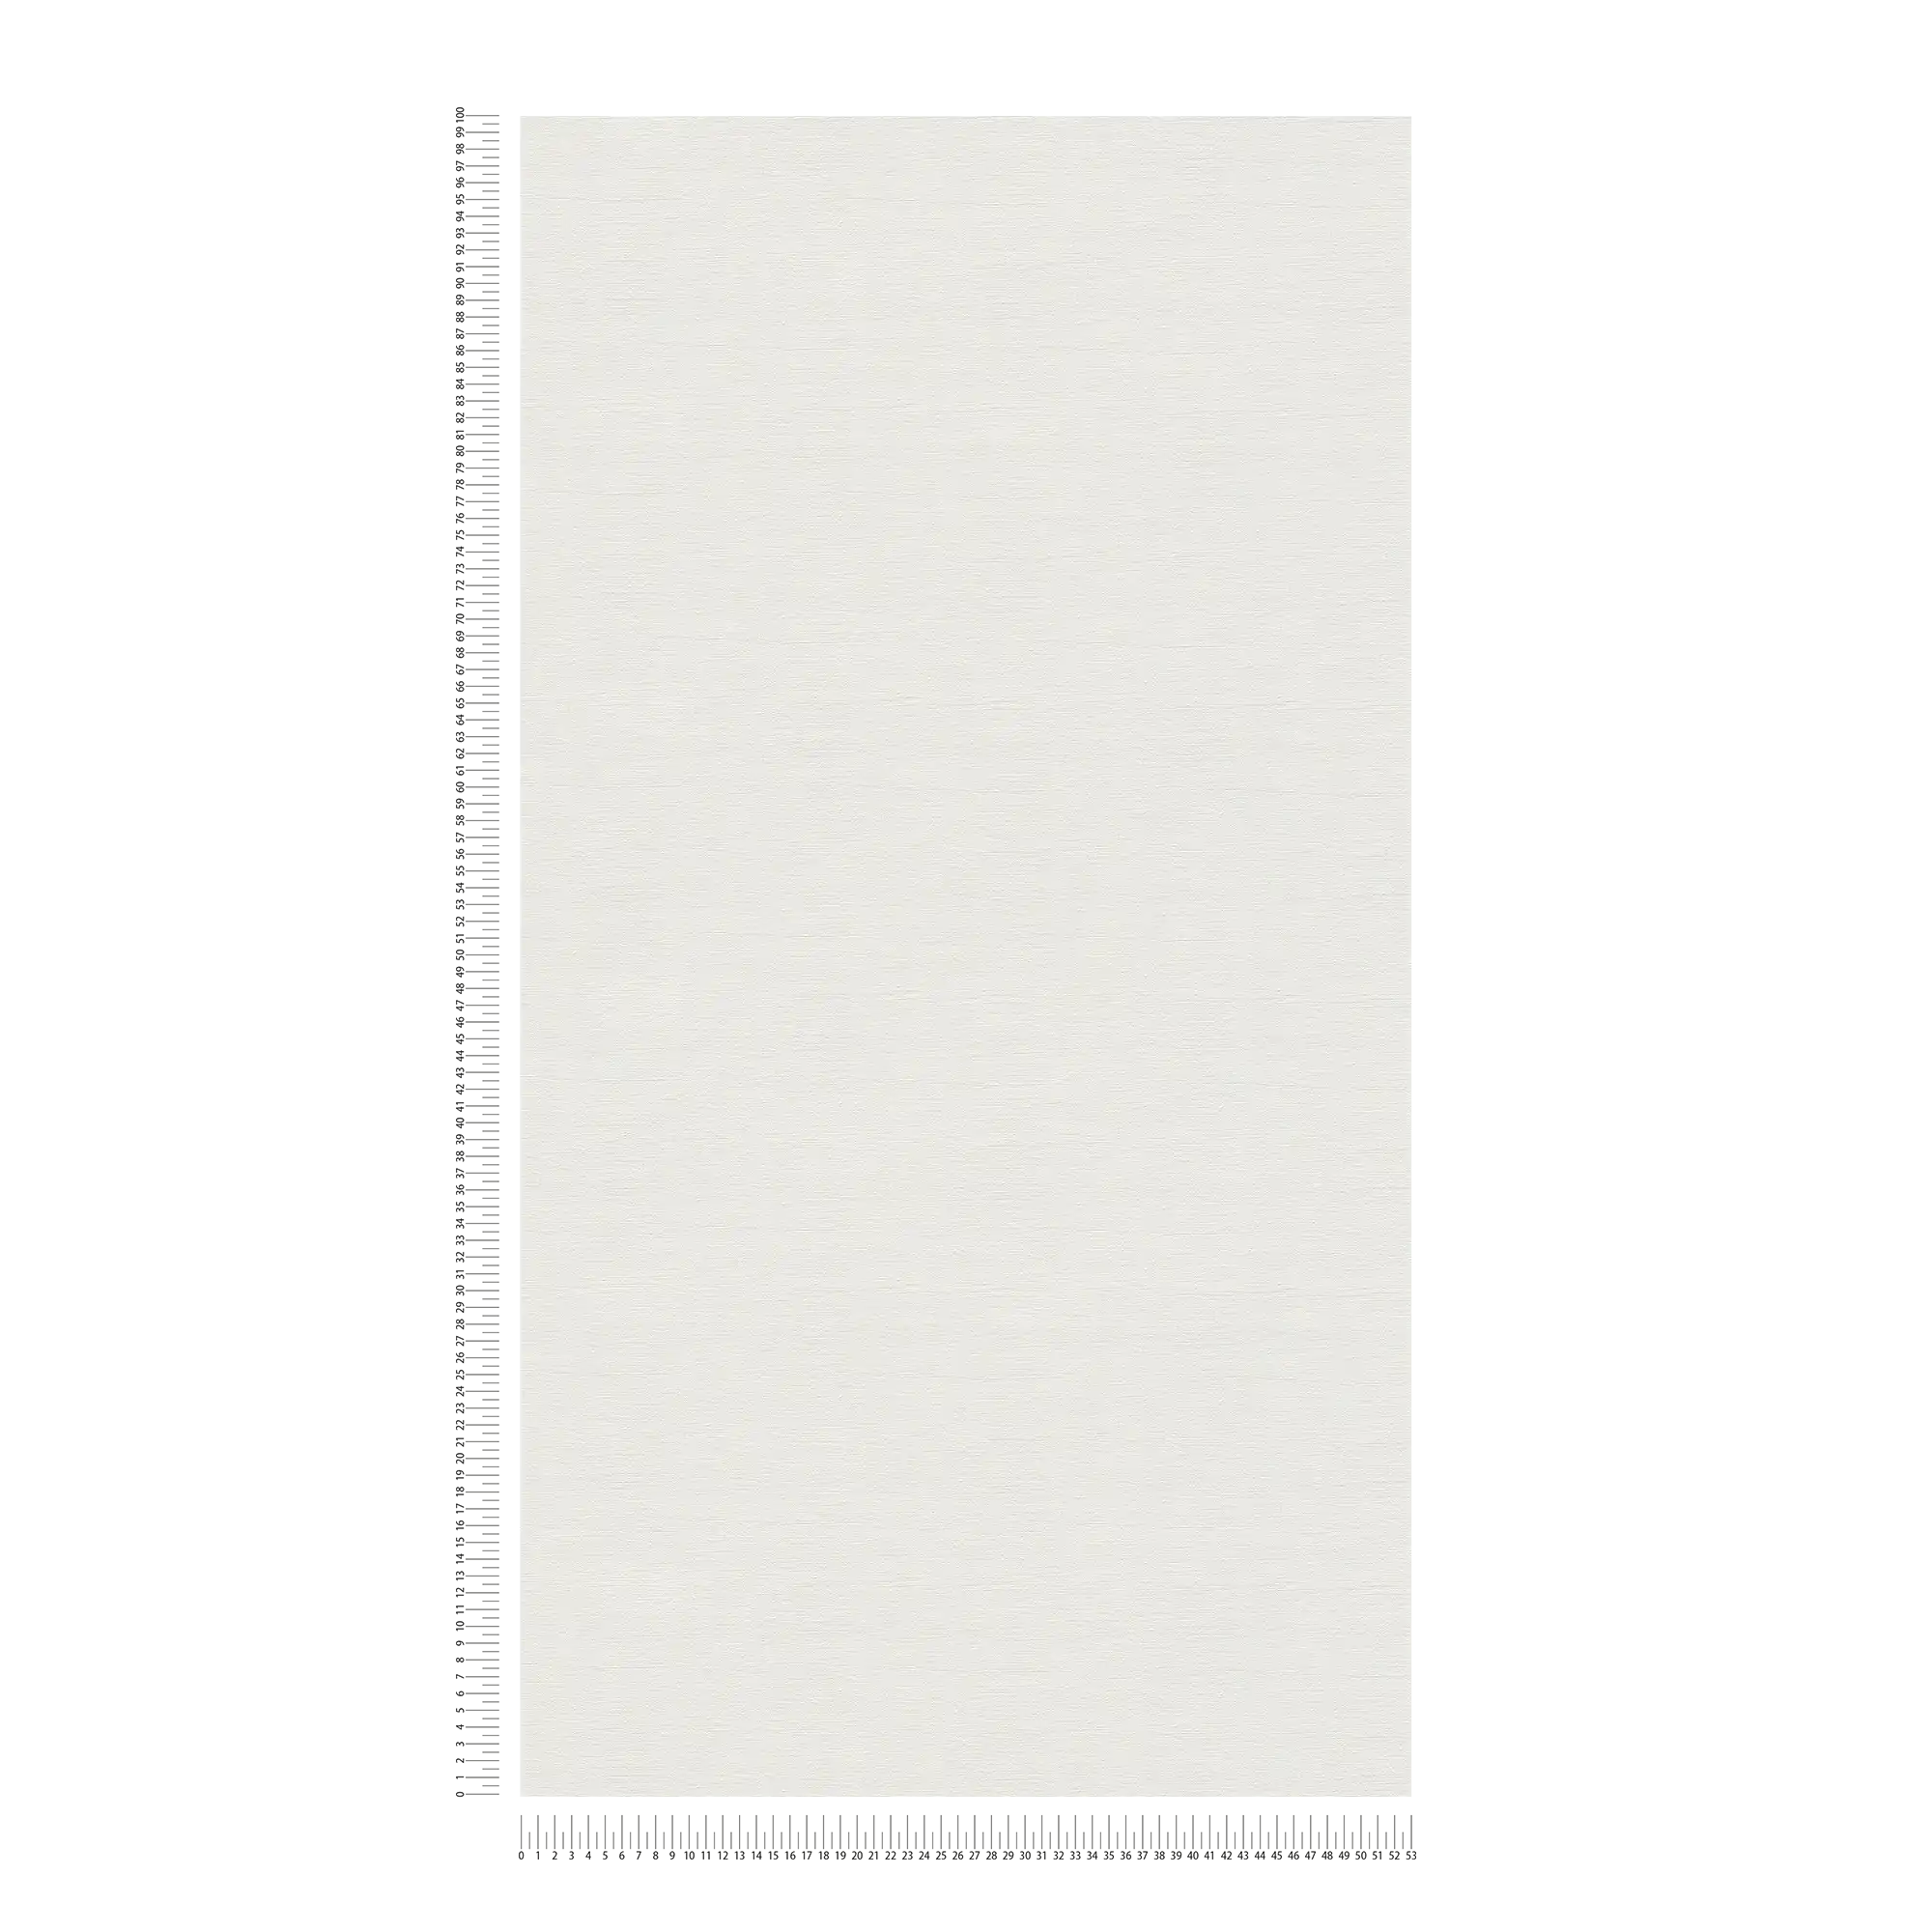             Carta da parati a tinta unita con una texture leggera - crema, grigio chiaro
        